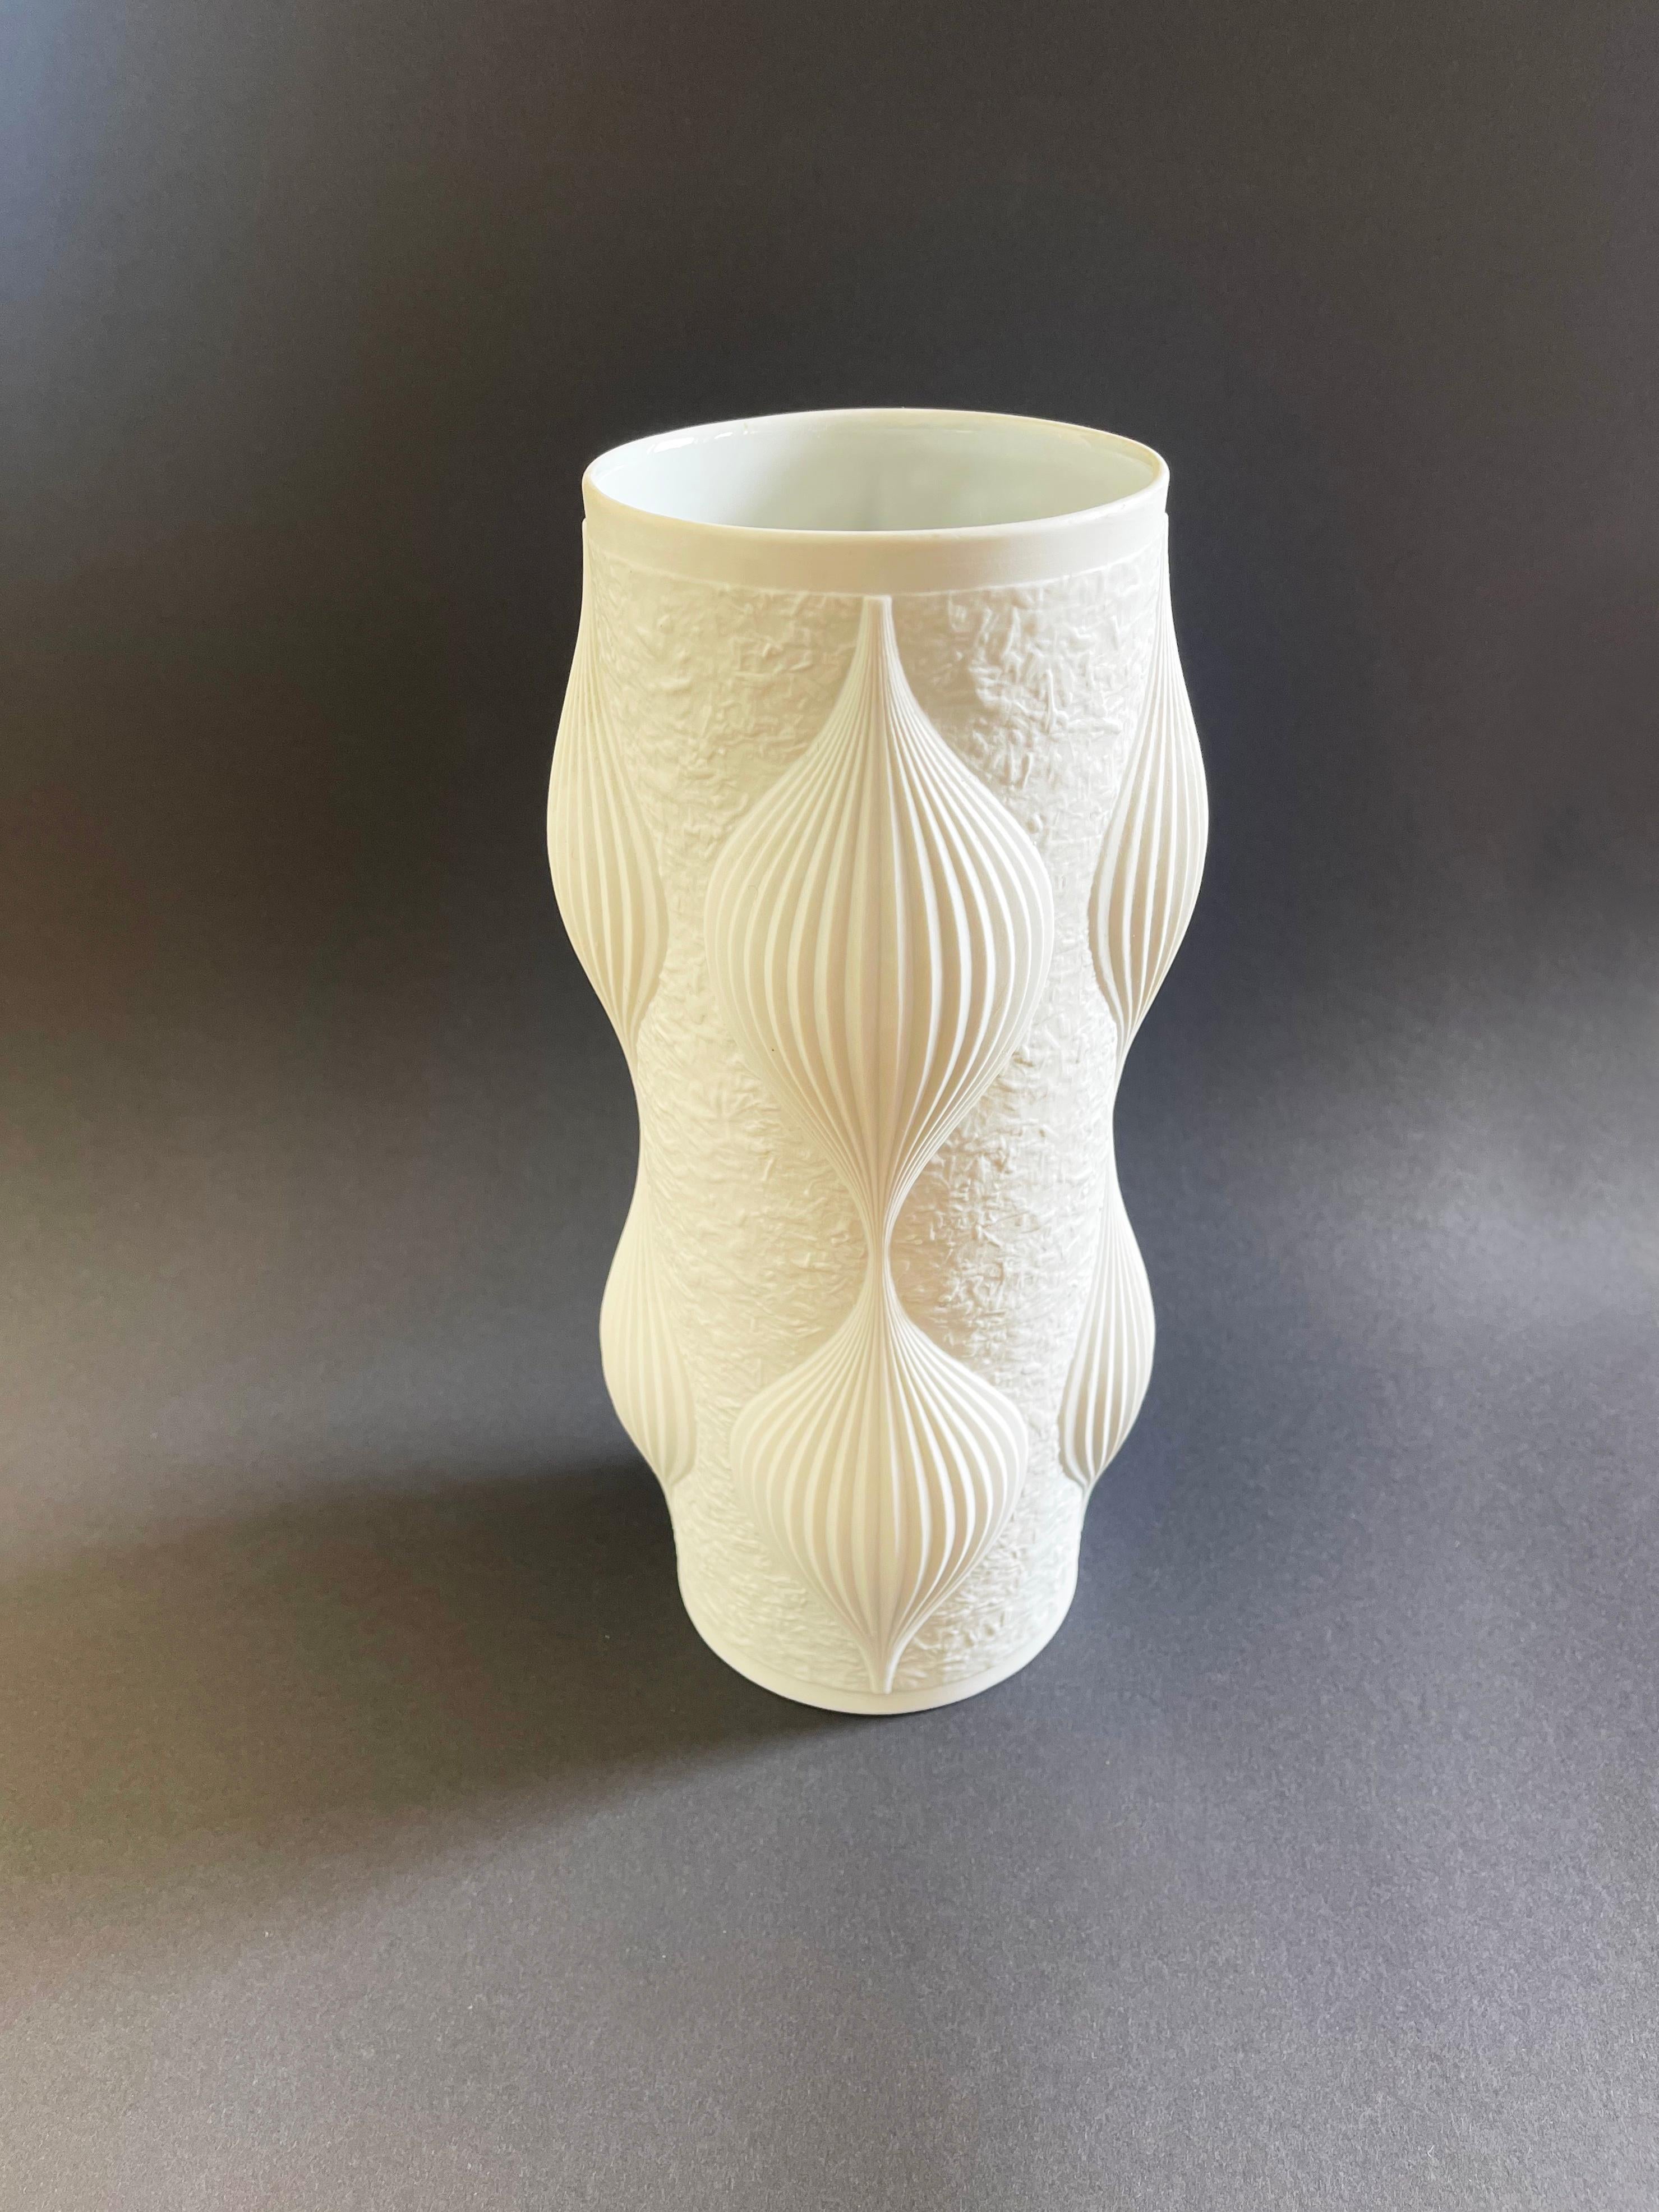 Un étonnant vase en porcelaine biscuit de studio du milieu du siècle, l'op-art à son apogée, fabriqué en Allemagne par Heinrich Fuchs pour Hutschenreuther, vers les années 1960. Le vase est en très bon état et ne présente aucun défaut.